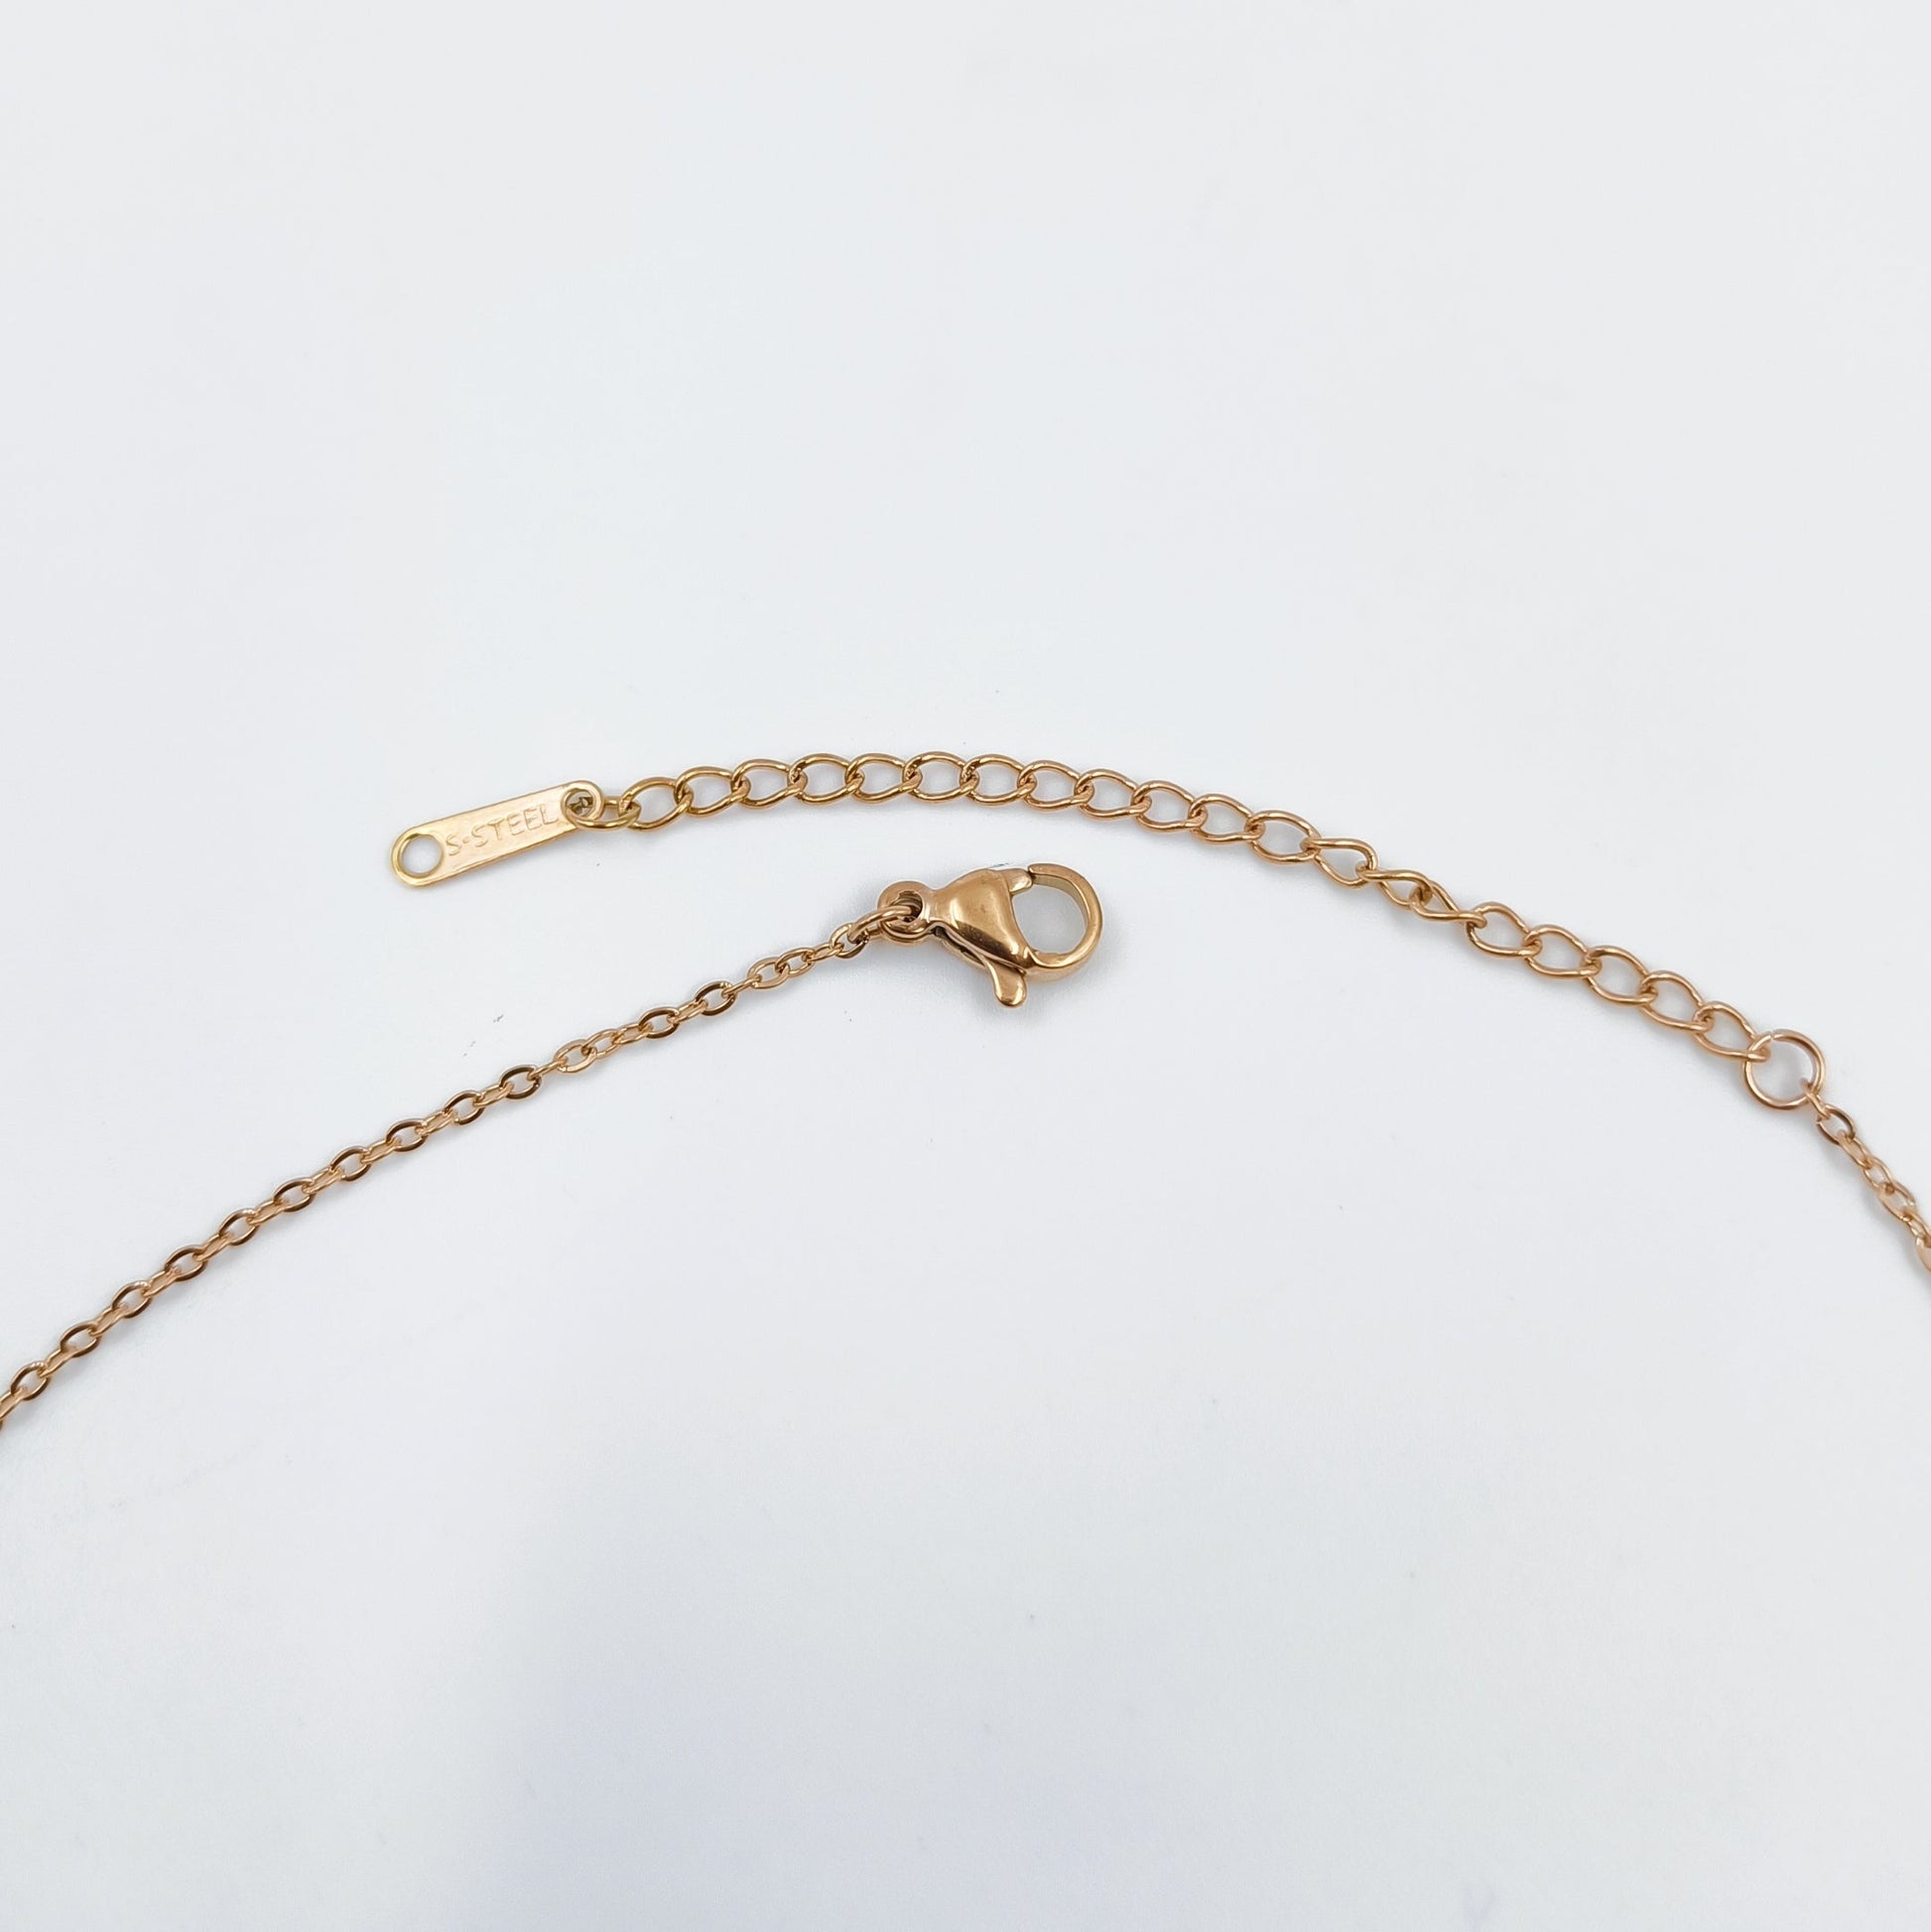 Elegant Designer Rose Gold Finish Chain Pendant  Set Shree Radhe Pearls